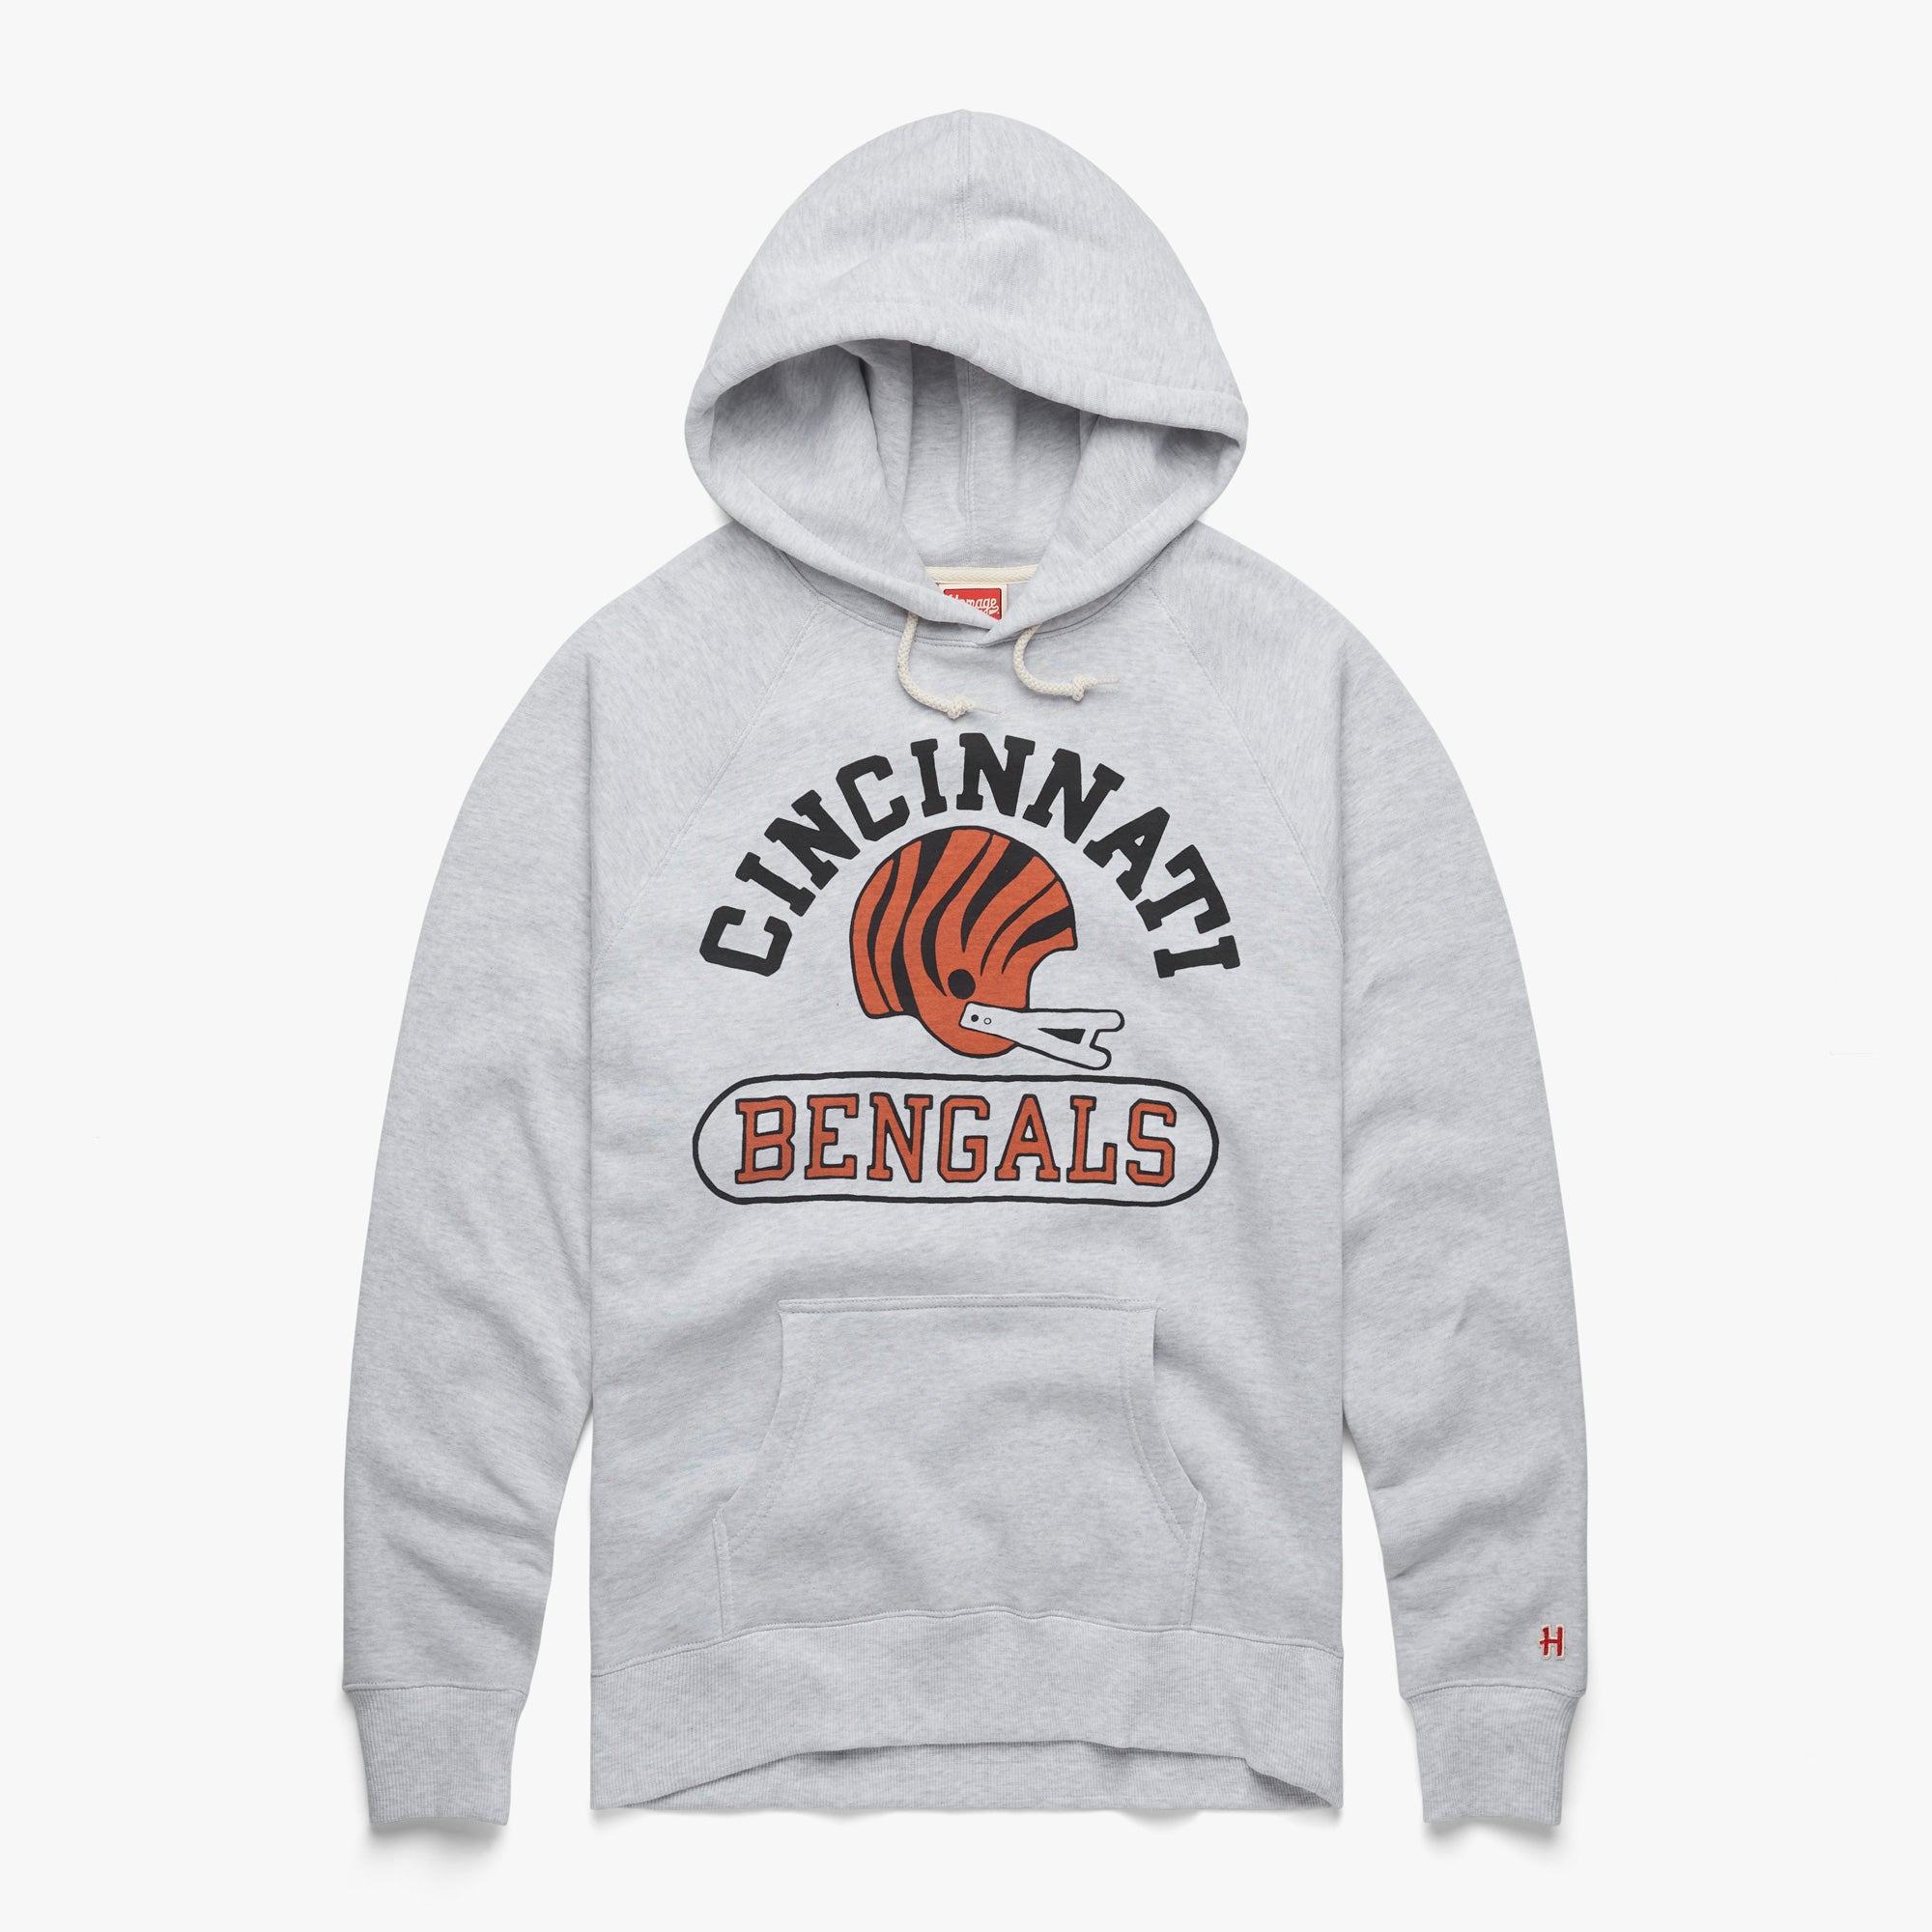 Cincinnati Bengals Sweatshirts, Bengals Hoodies